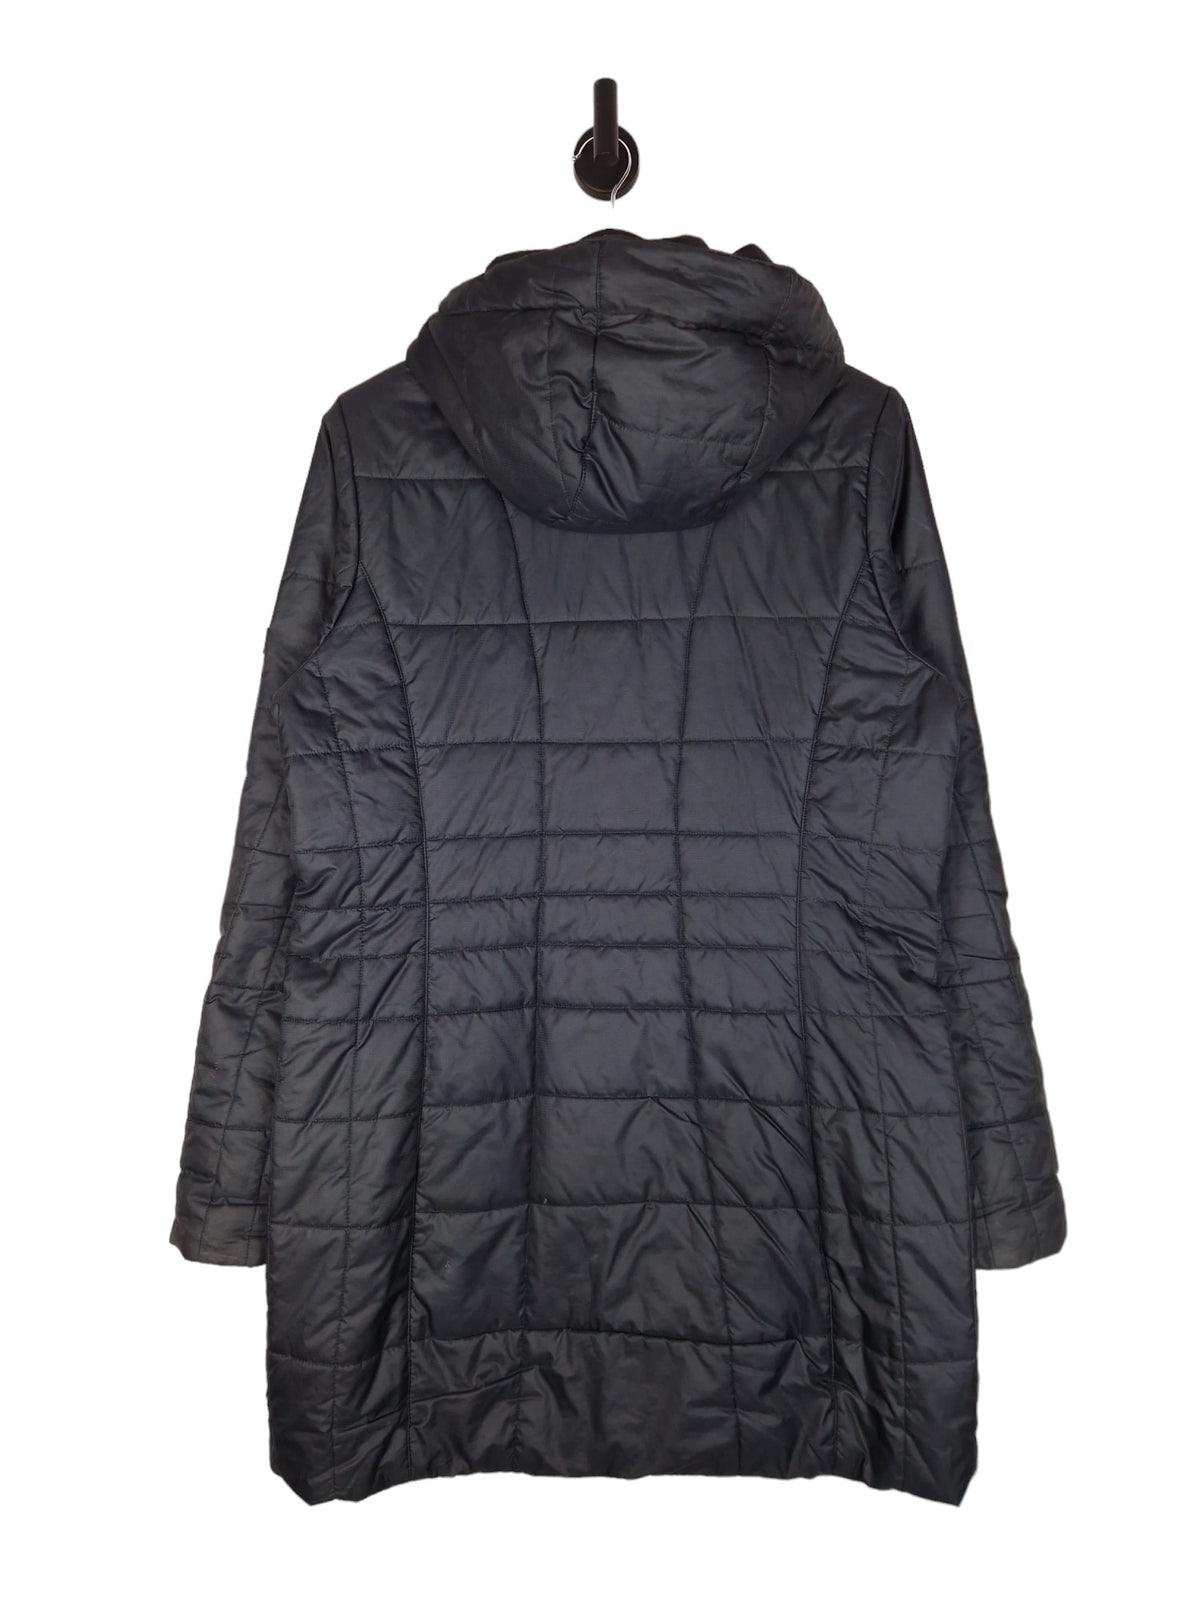 Berghaus Long Puffer Jacket - Size UK 16